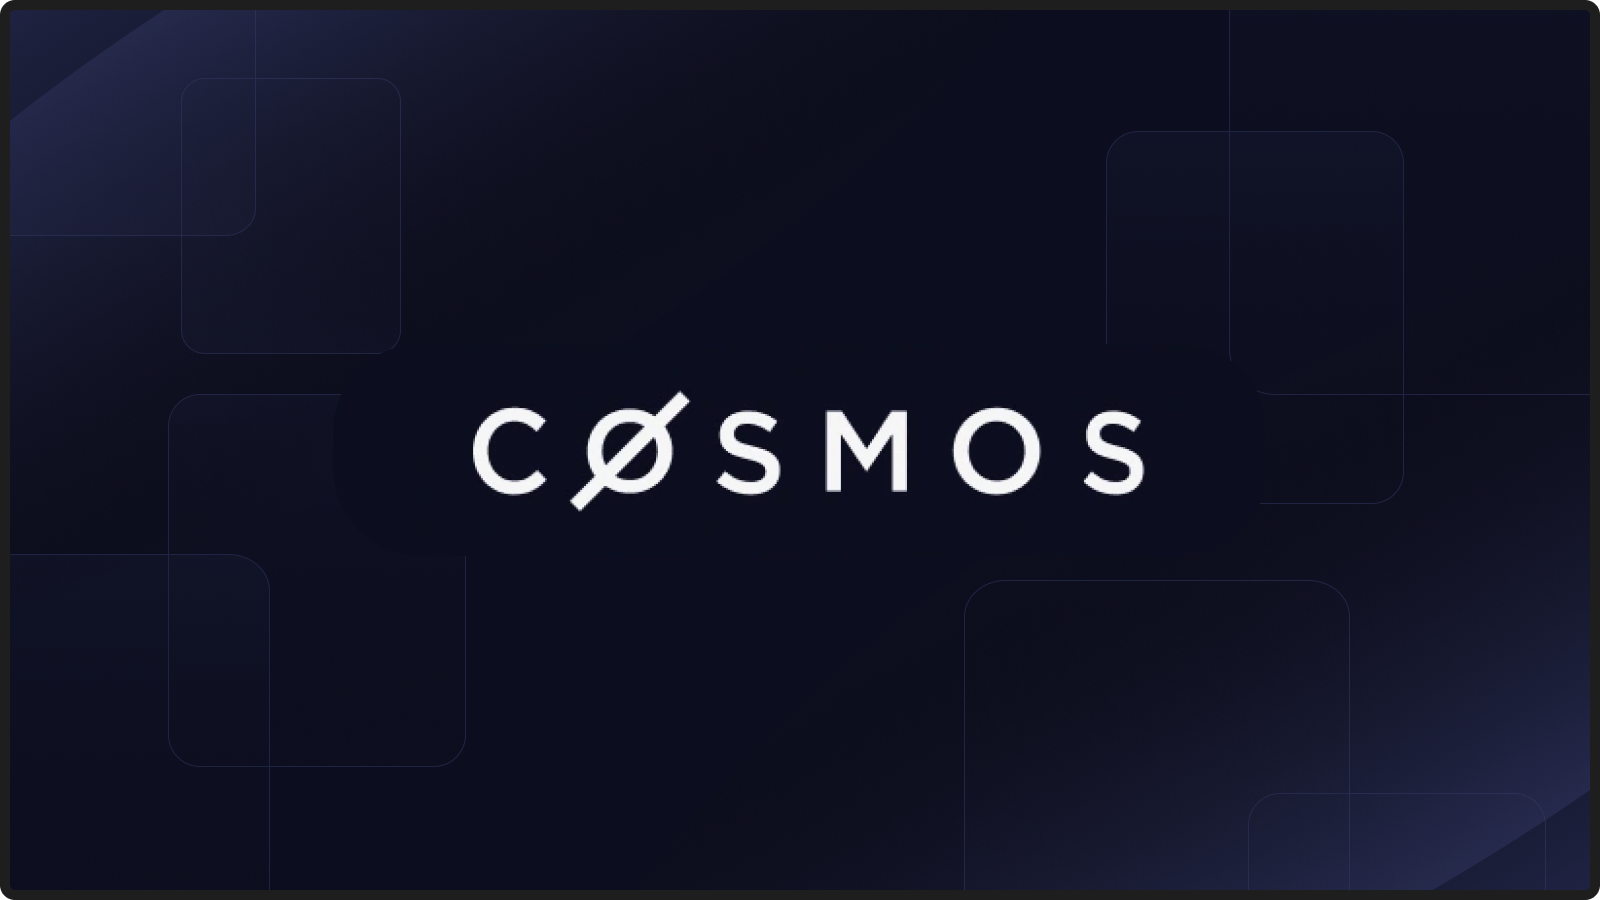 Enter the Ecosystem: Cosmos